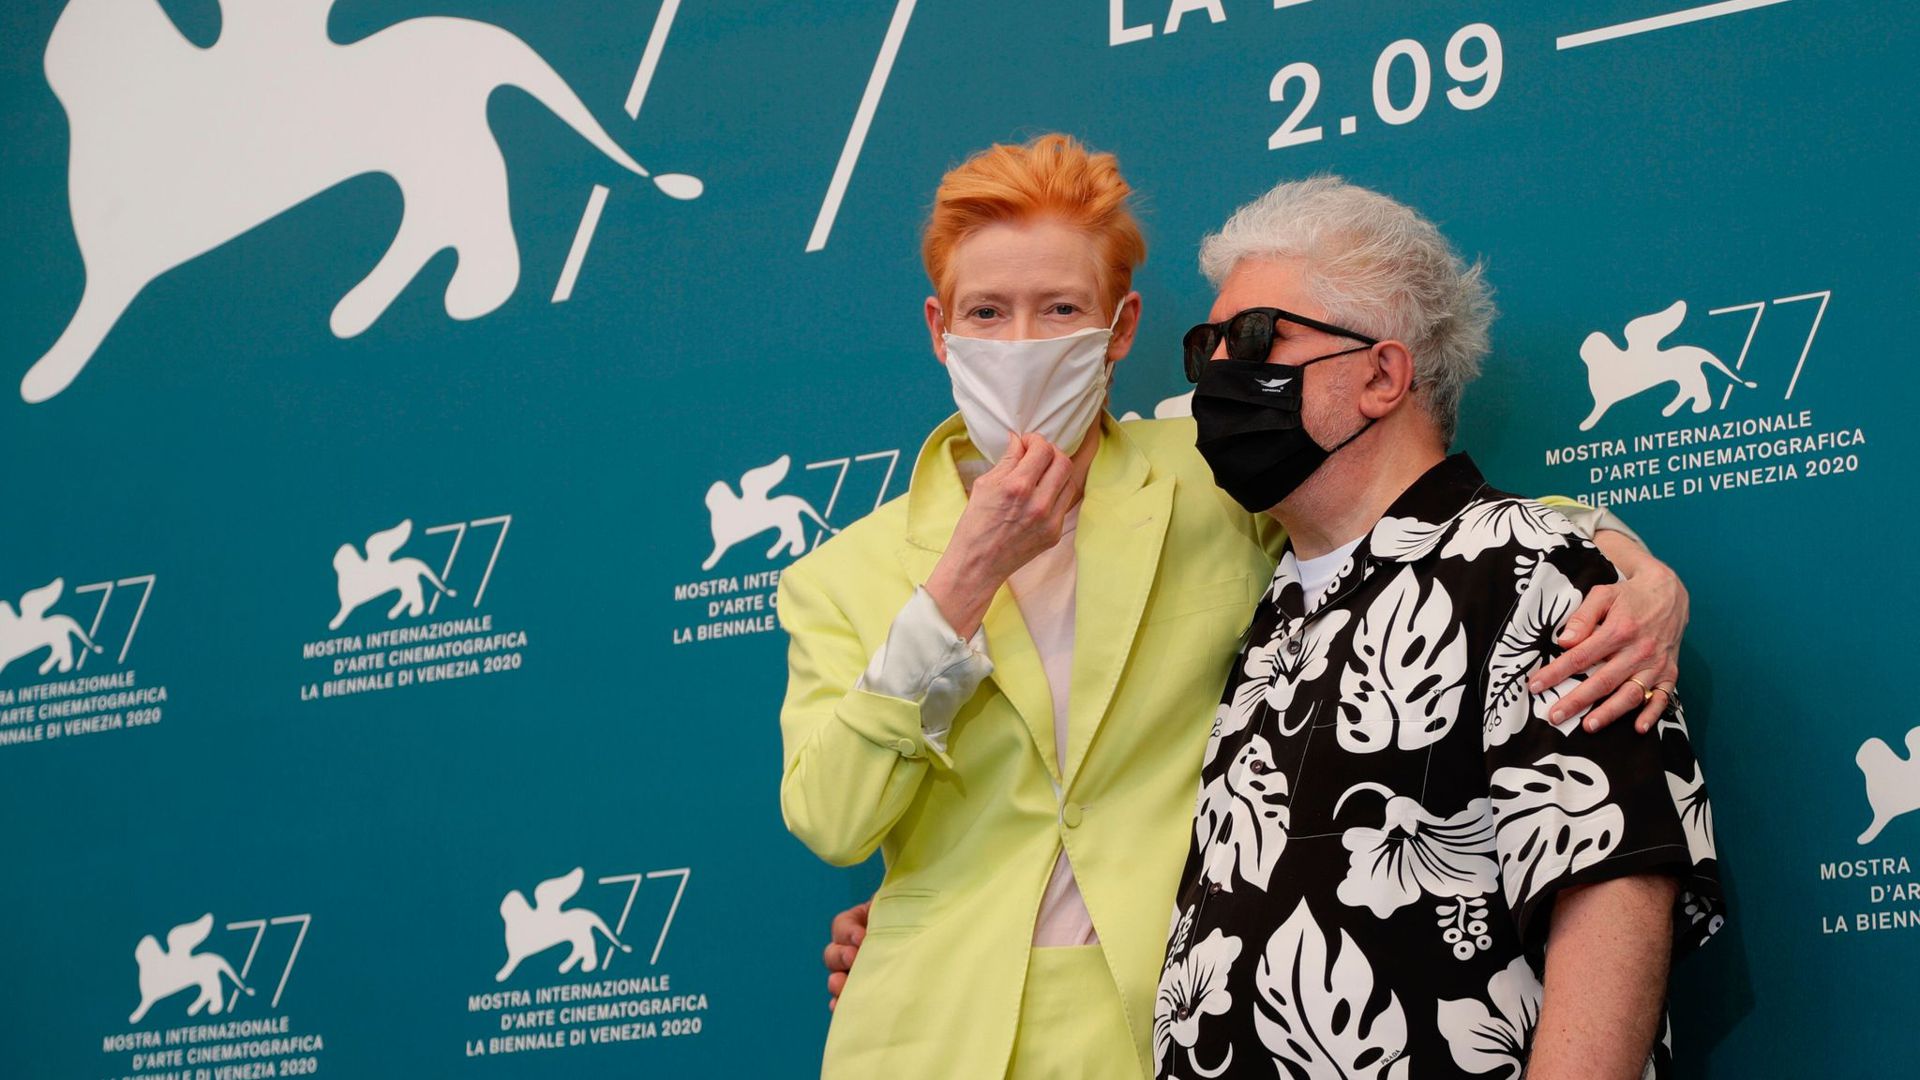 Pedro Almodóvar (r), Regisseur aus Spanien, und Tilda Swinton, Schauspielerin aus Großbritannien, mit Masken beim Filmfest in Venedig.